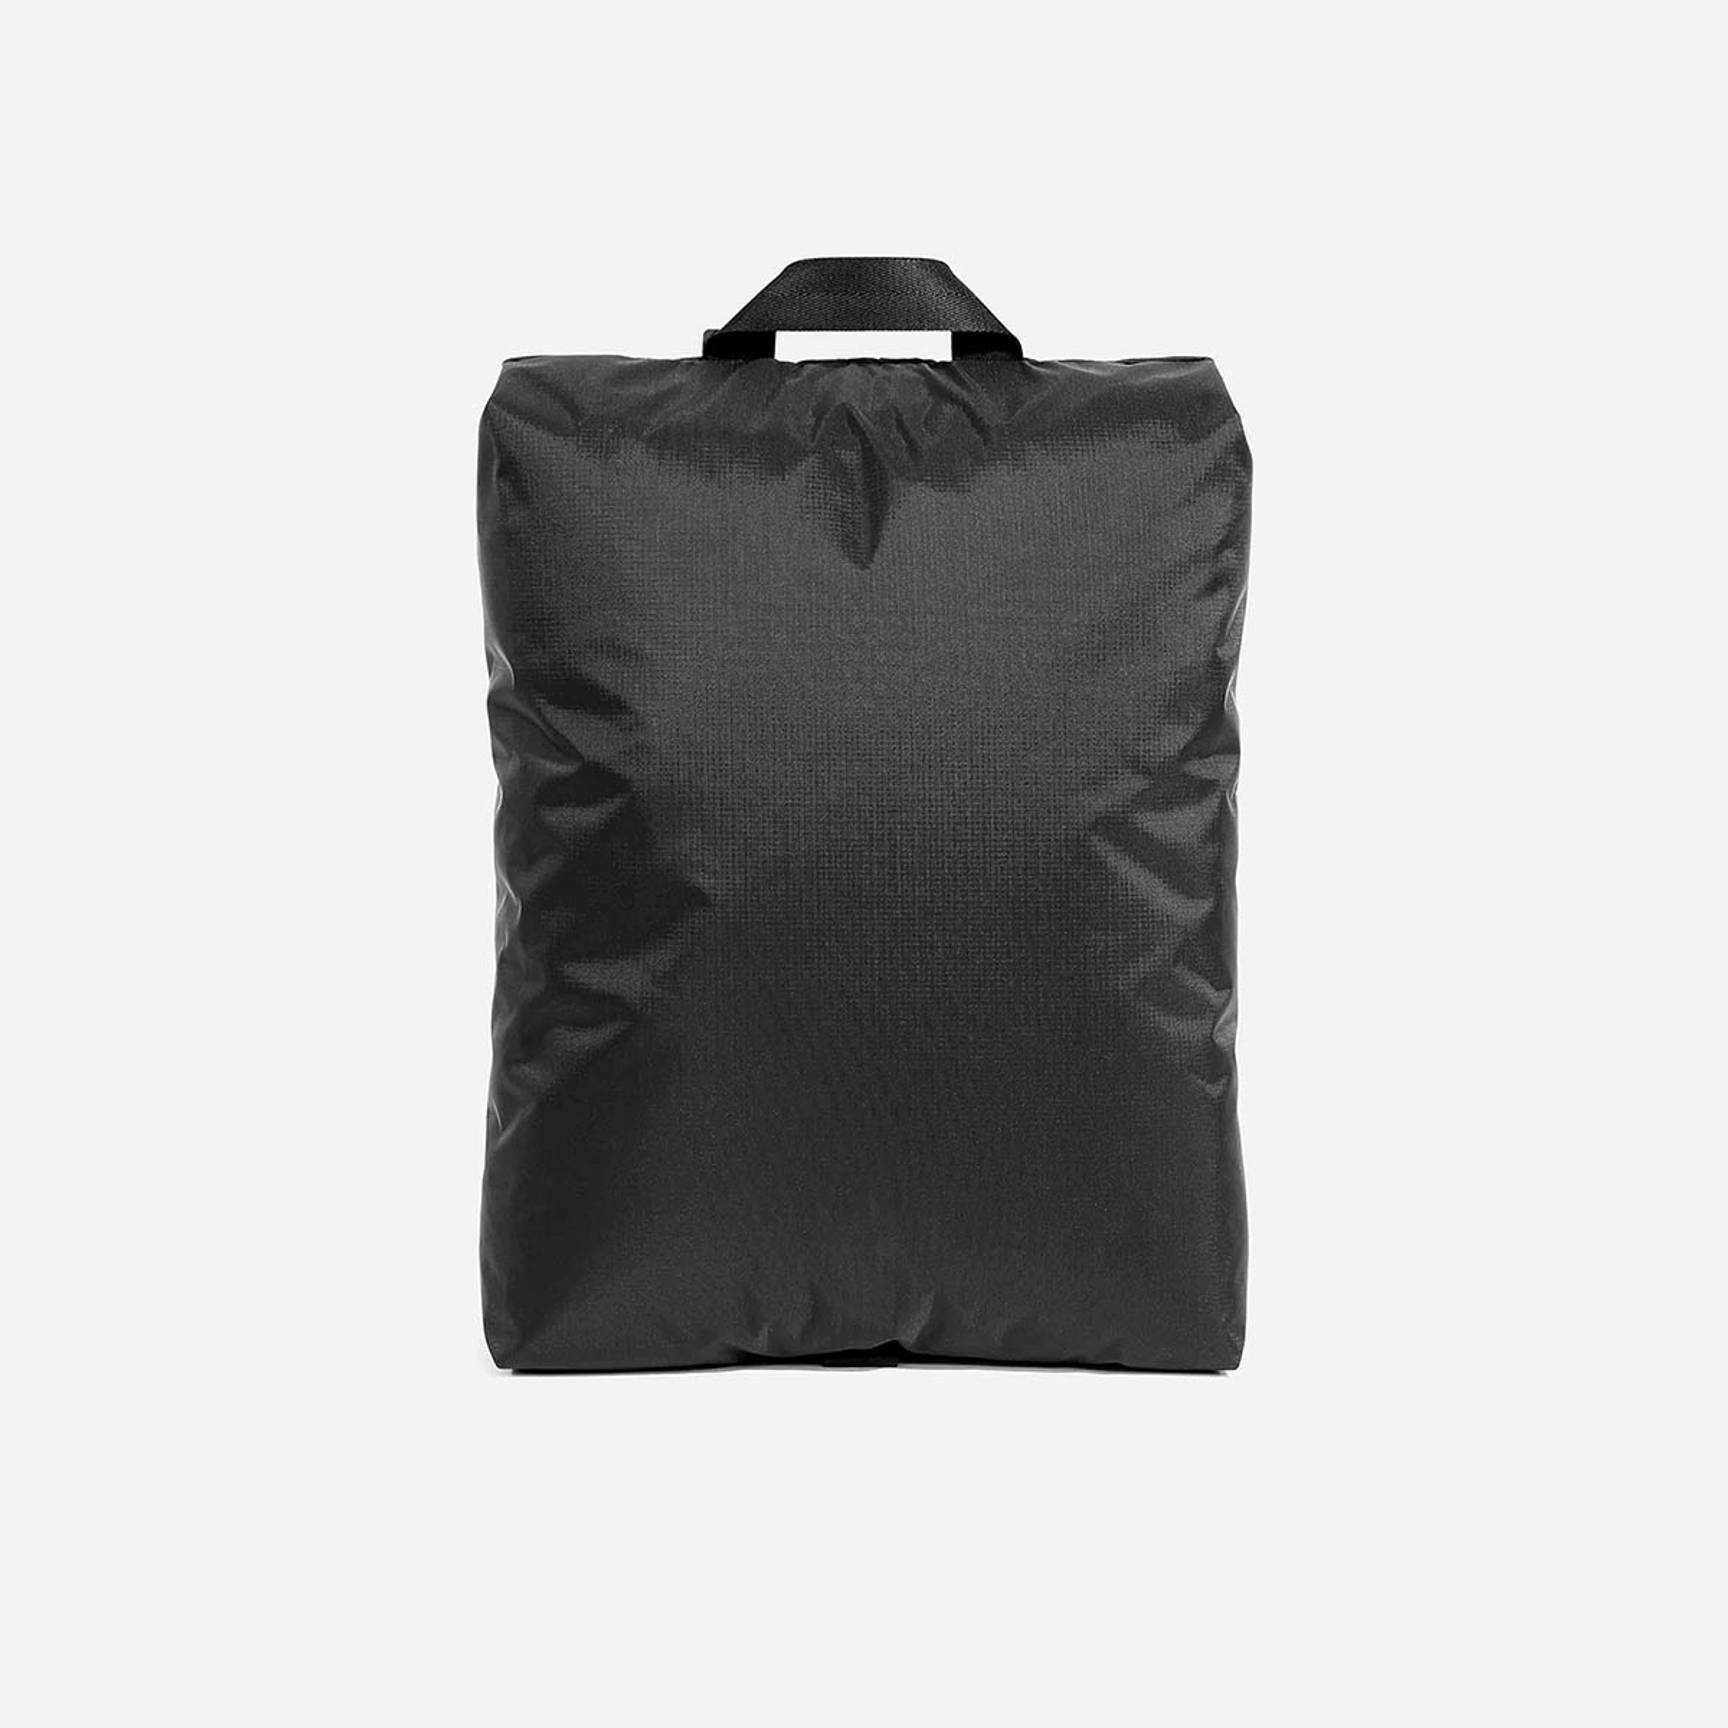 Its Nylon Zip Bag